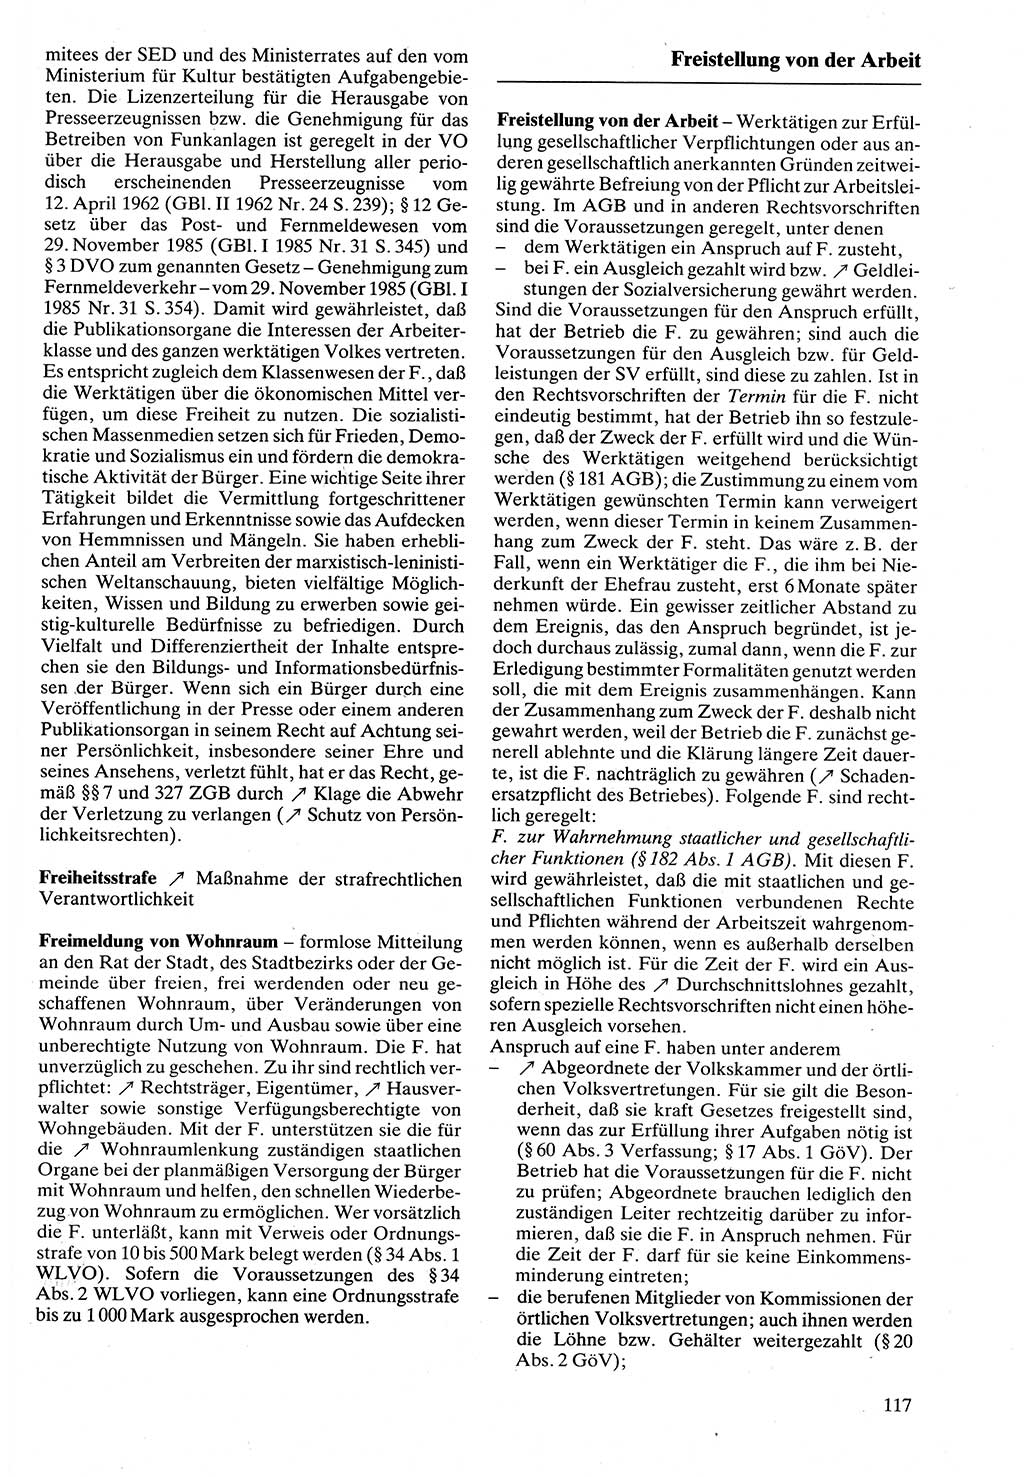 Rechtslexikon [Deutsche Demokratische Republik (DDR)] 1988, Seite 117 (Rechtslex. DDR 1988, S. 117)